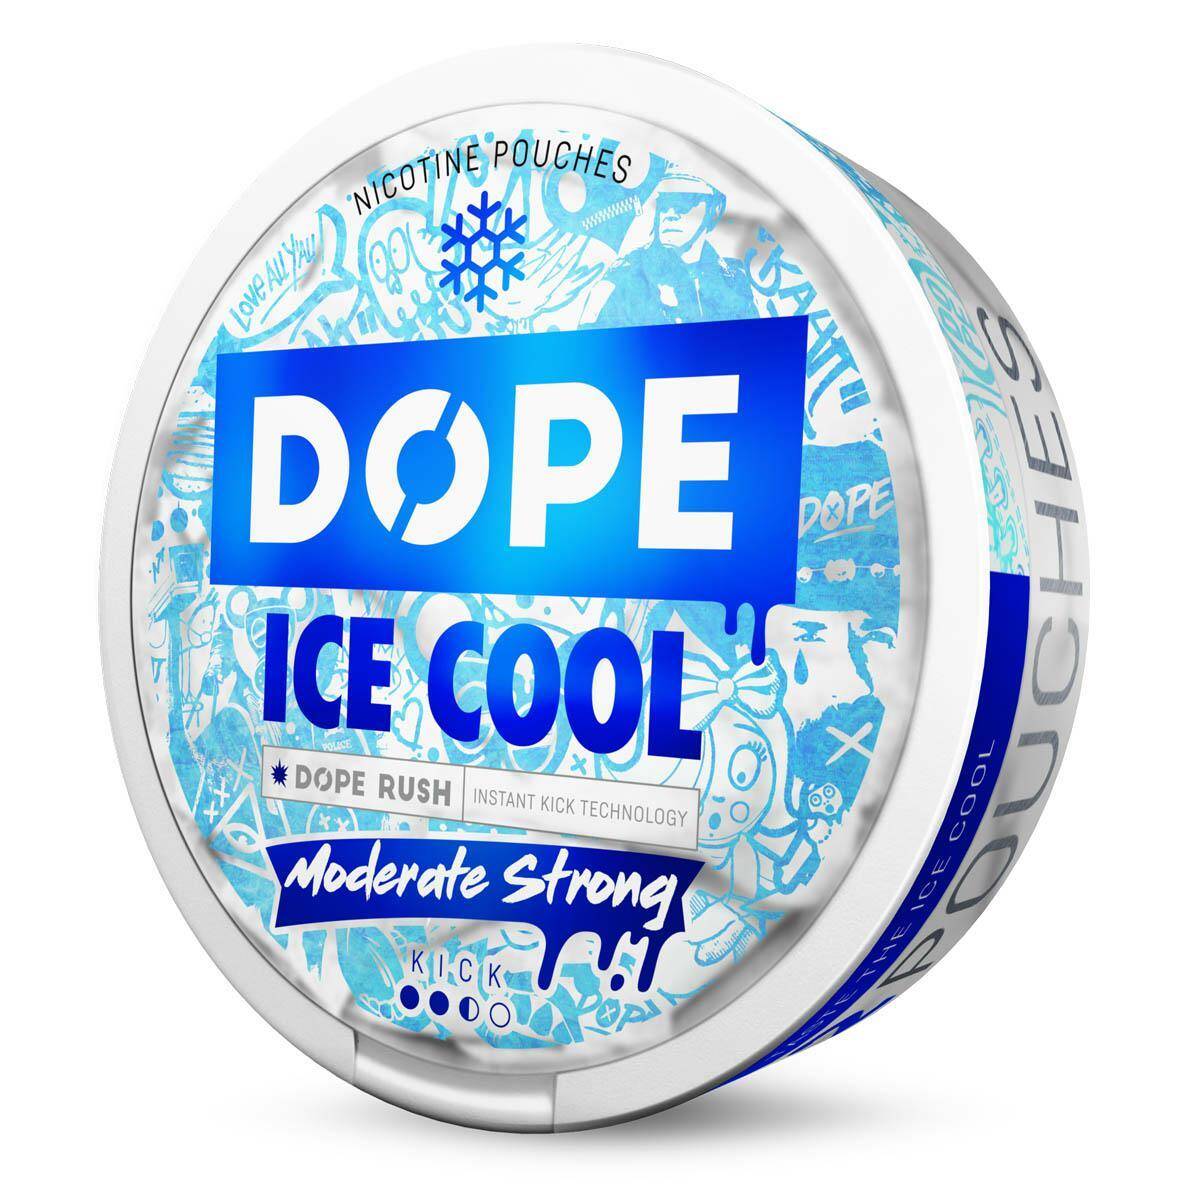 SNUS - Saszetki nikotynowe DOPE - Ice Cool 16mg/g (Zdjęcie 2)